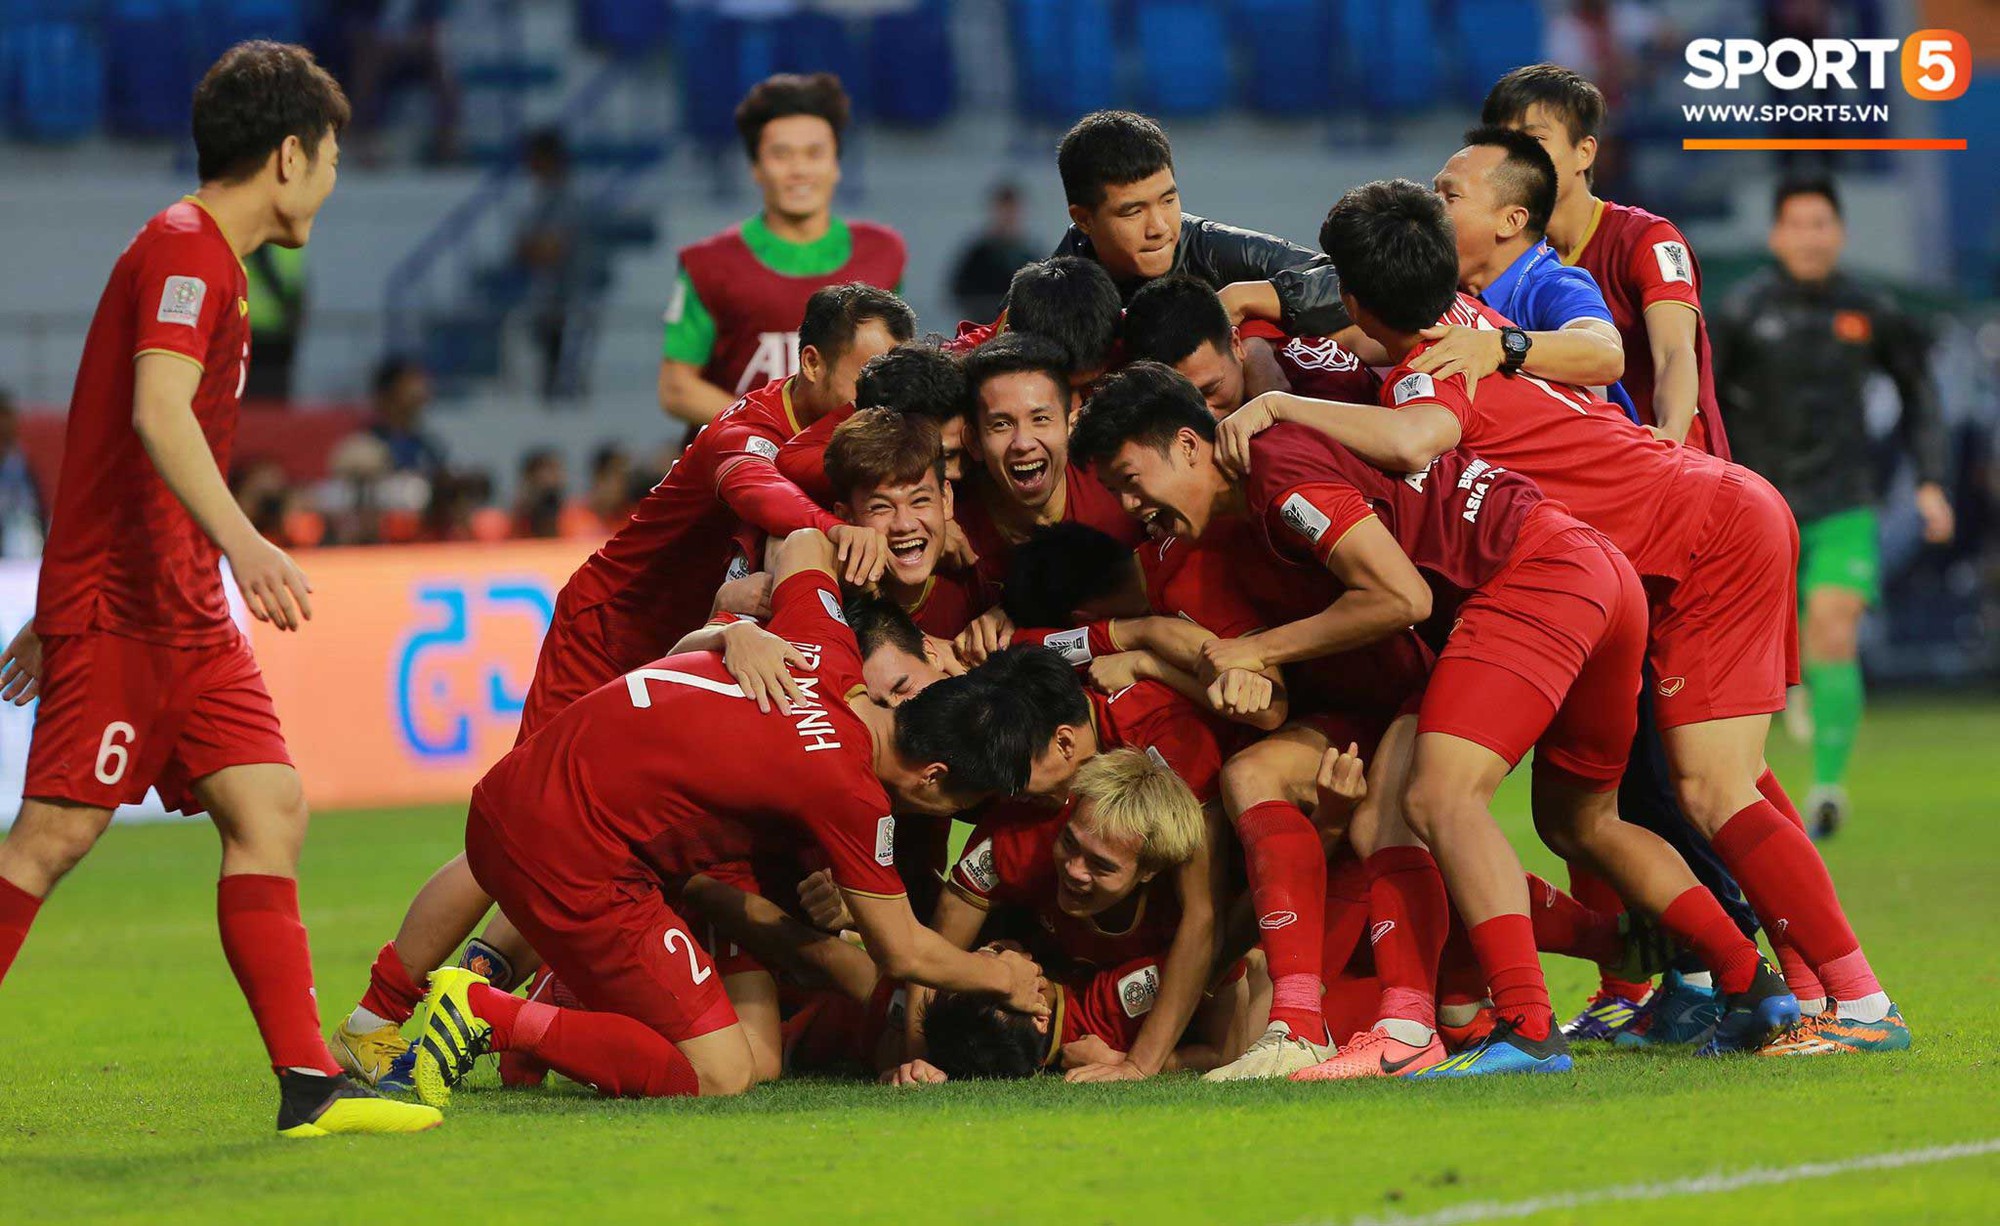 Thủ môn Bùi Tiến Dũng đã trở thành niềm tự hào của đội tuyển Việt Nam với nhiều pha cứu thua xuất sắc. Hãy cùng xem bức ảnh đầy ấn tượng về màn trình diễn của anh ấy trong trận đấu nảy lửa này.